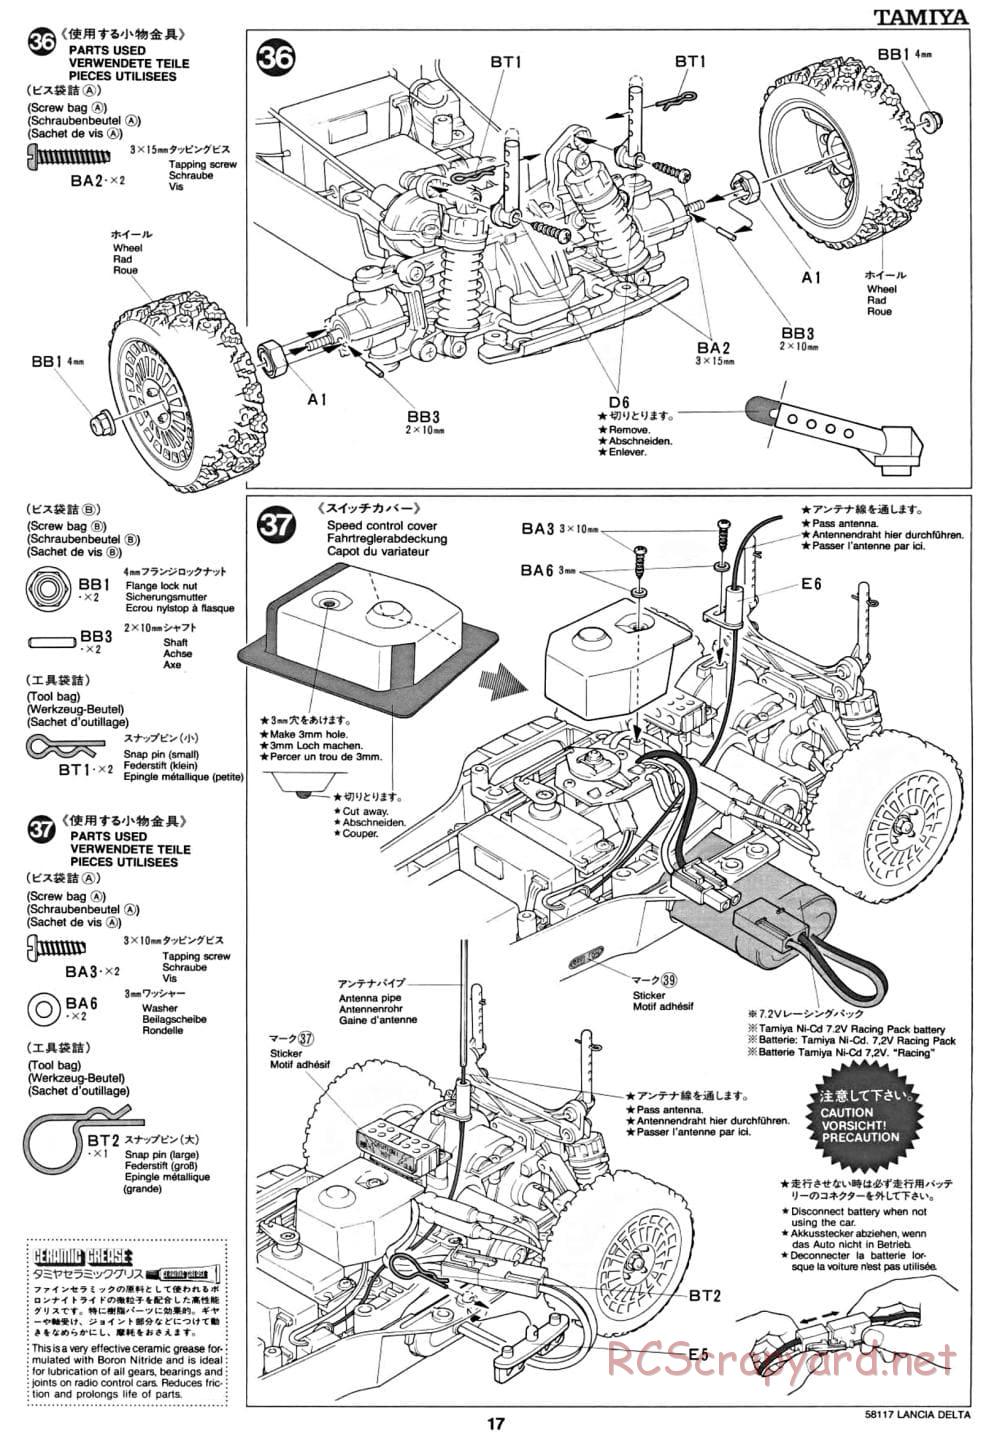 Tamiya - Lancia Delta HF Integrale - TA-01 Chassis - Manual - Page 17